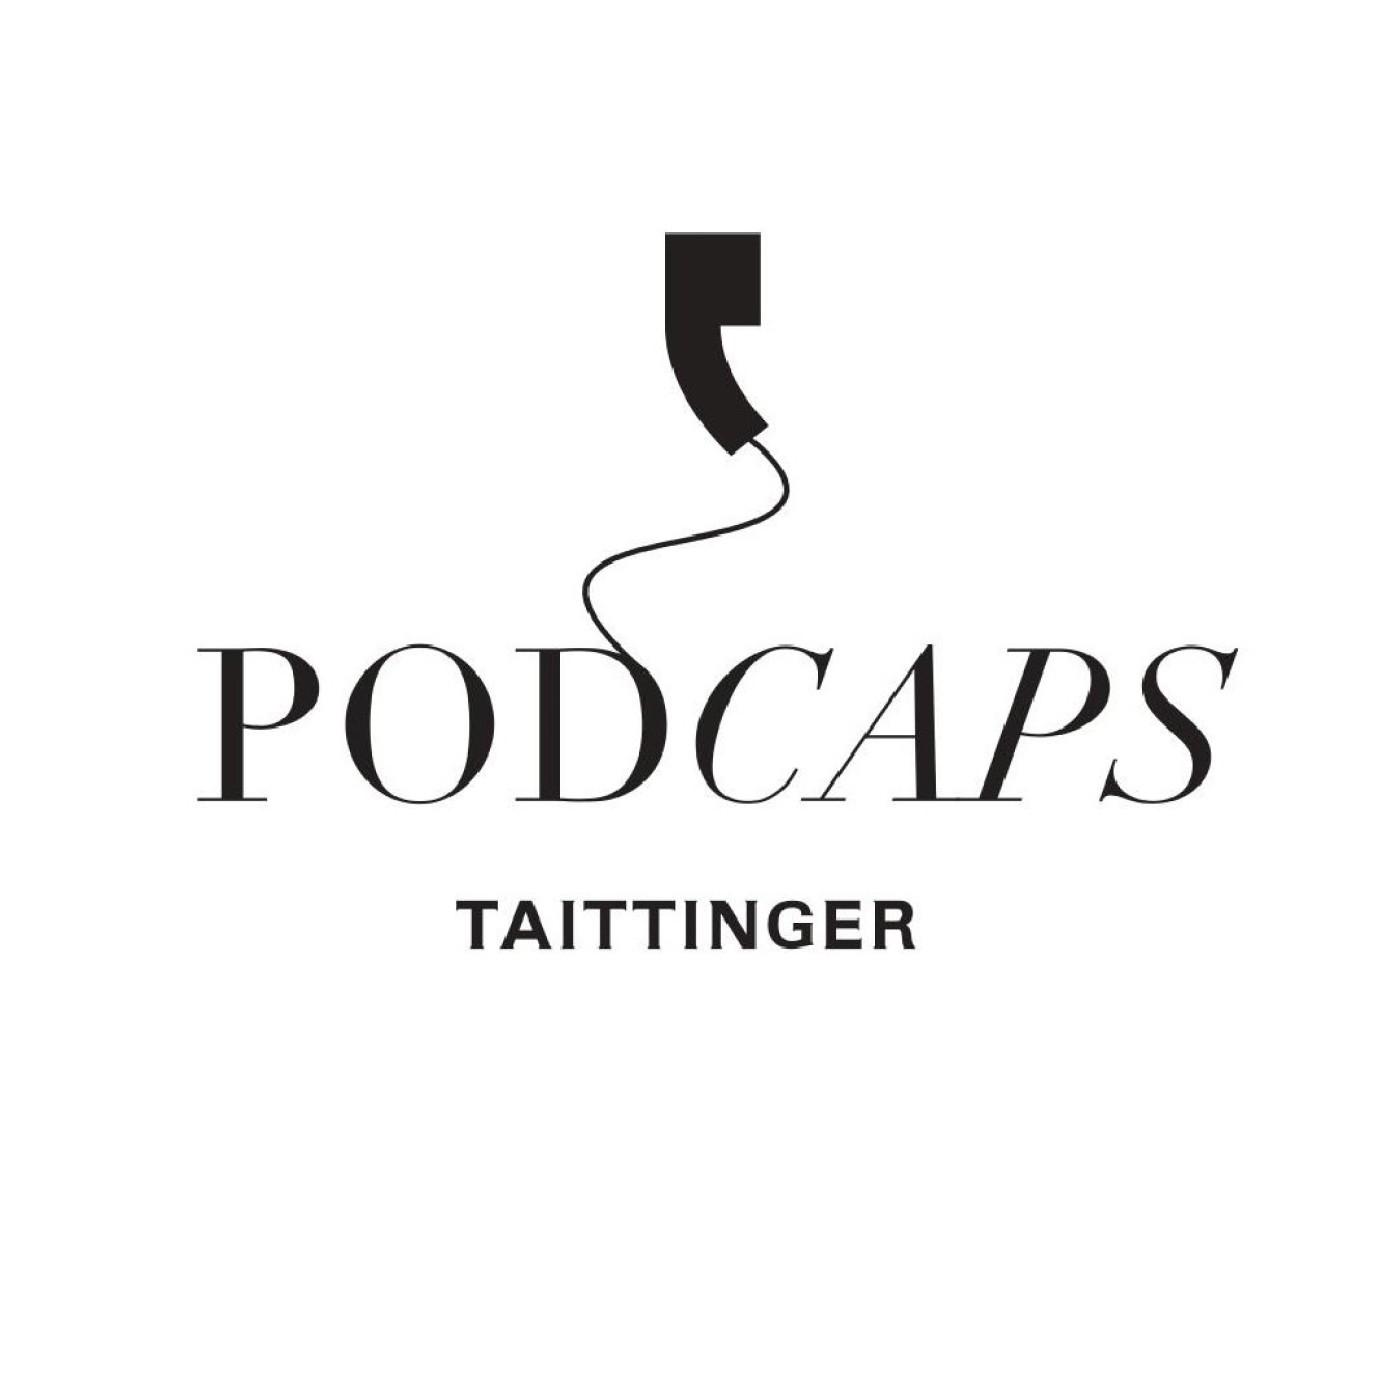 Podcaps Taittinger : Mikael Falkman, Taittinger Brand Ambassador